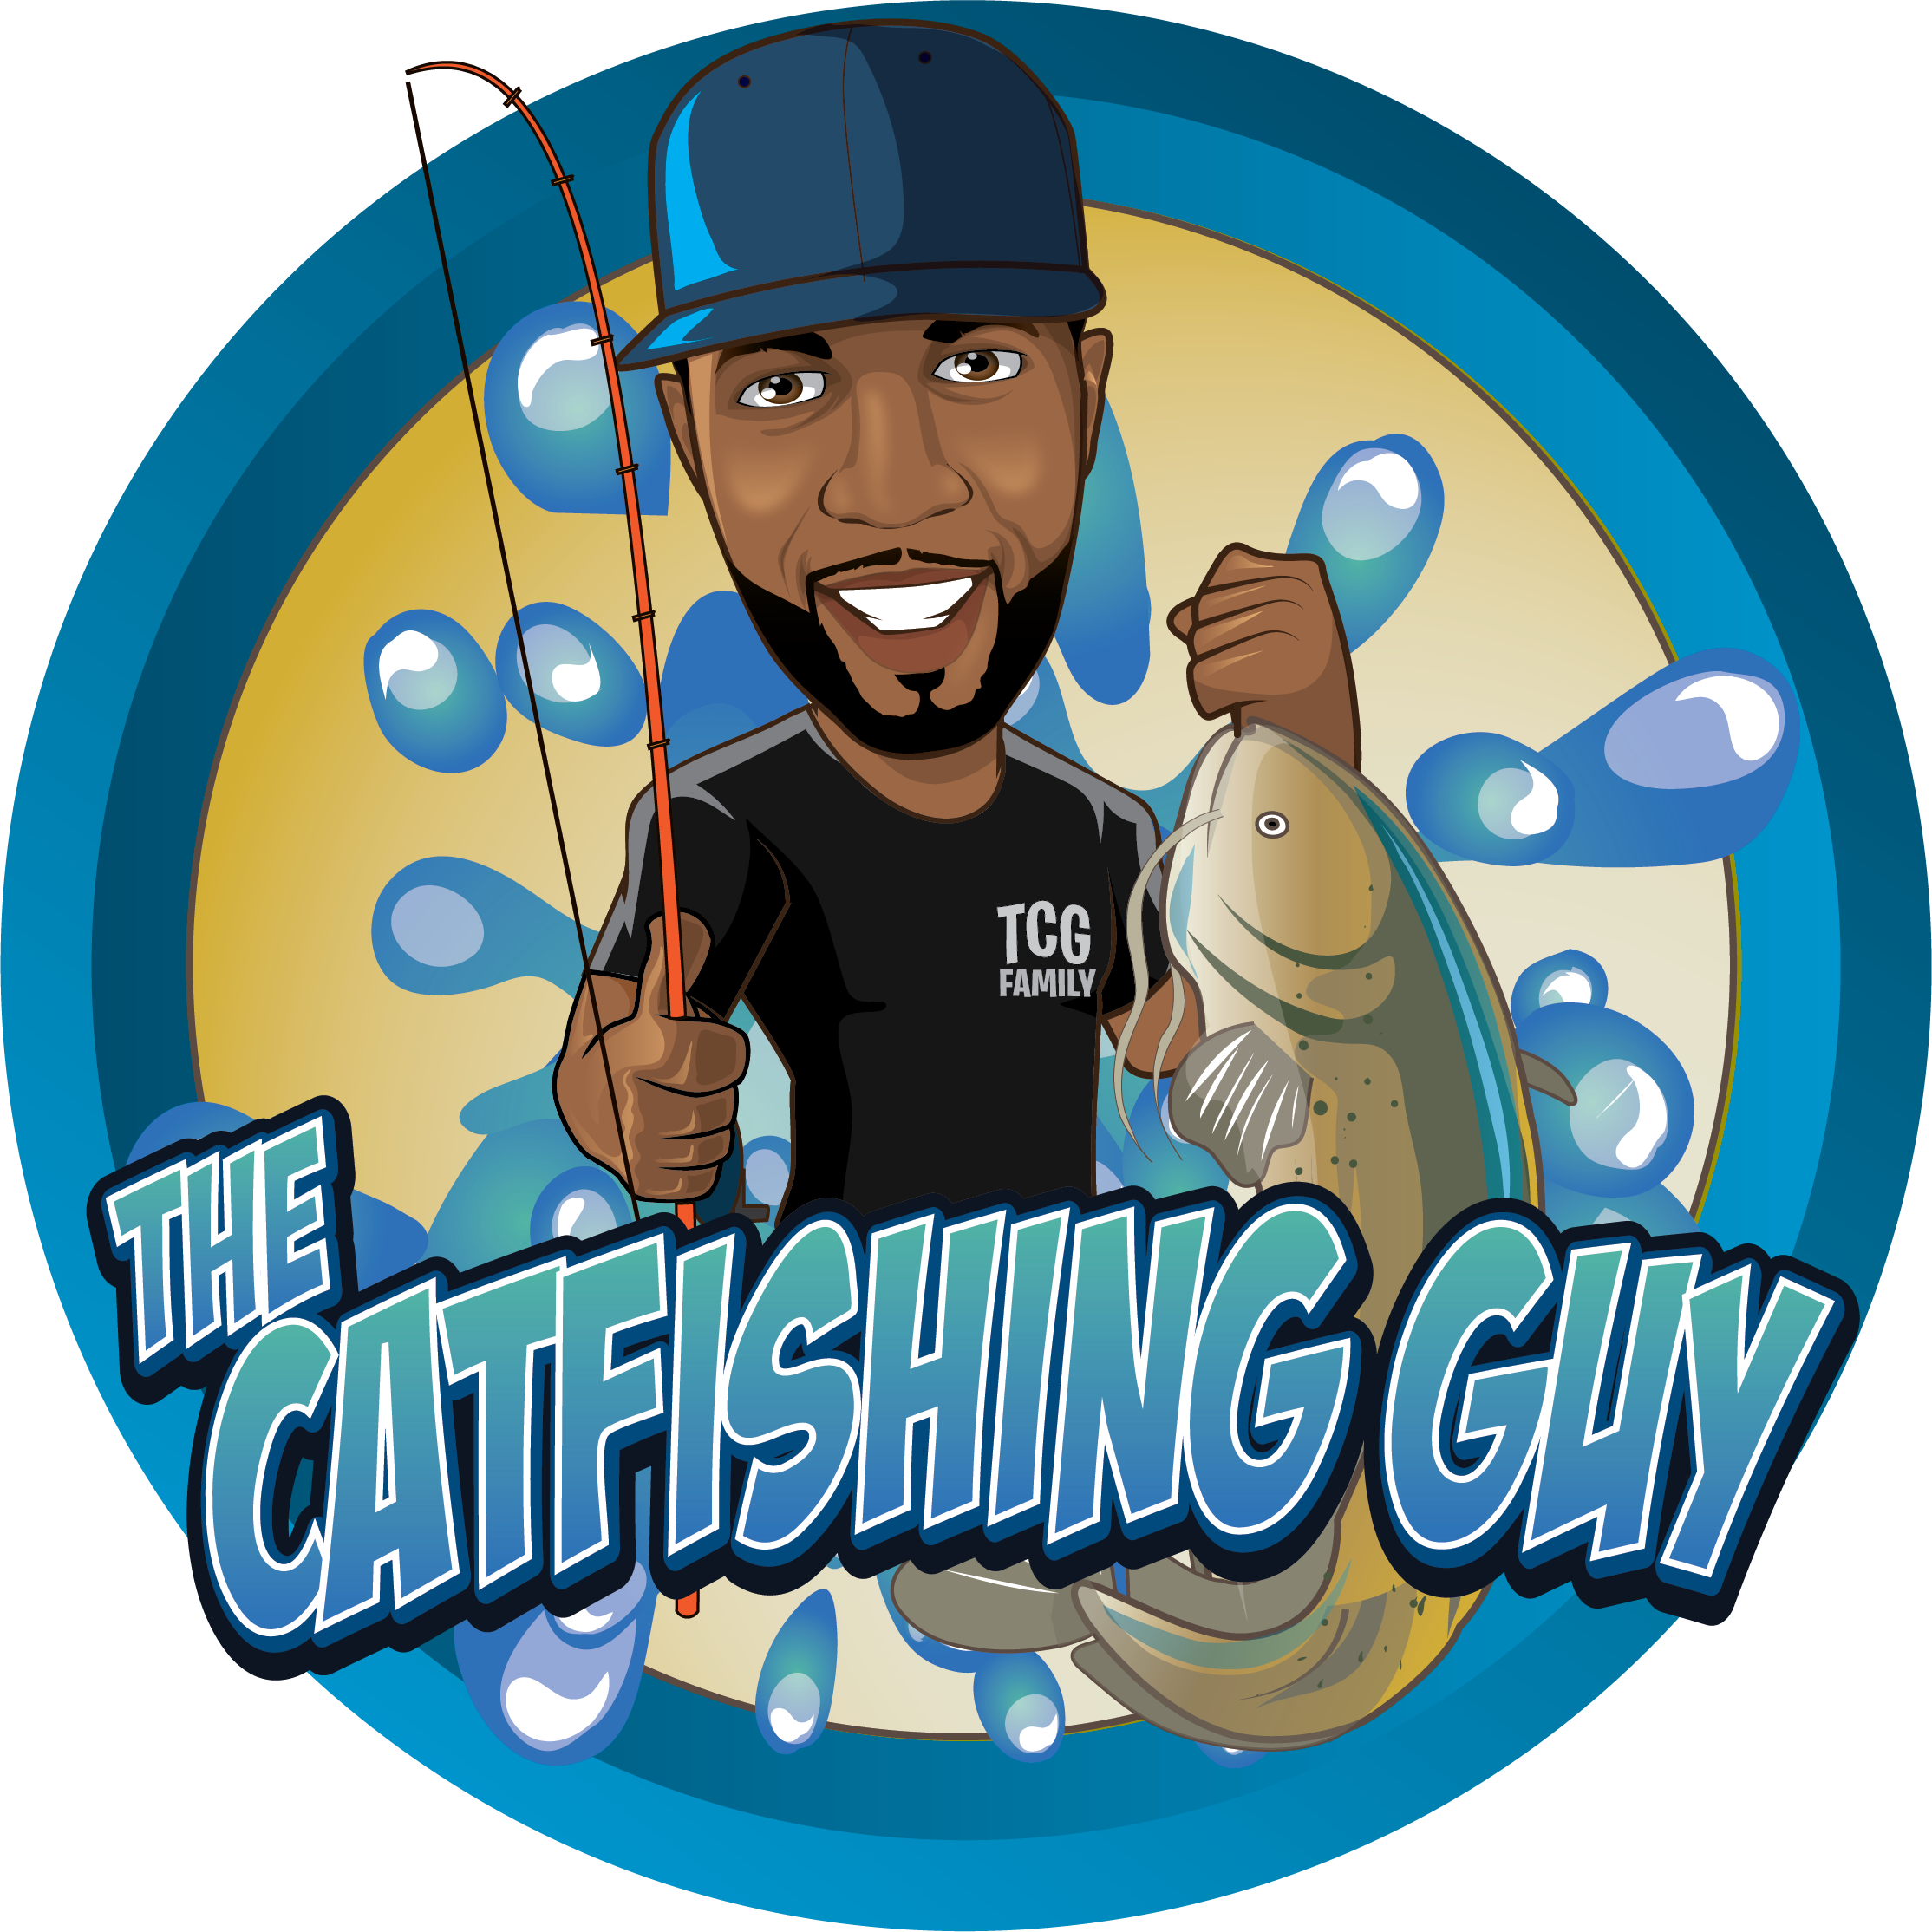 The Catfishing Guy